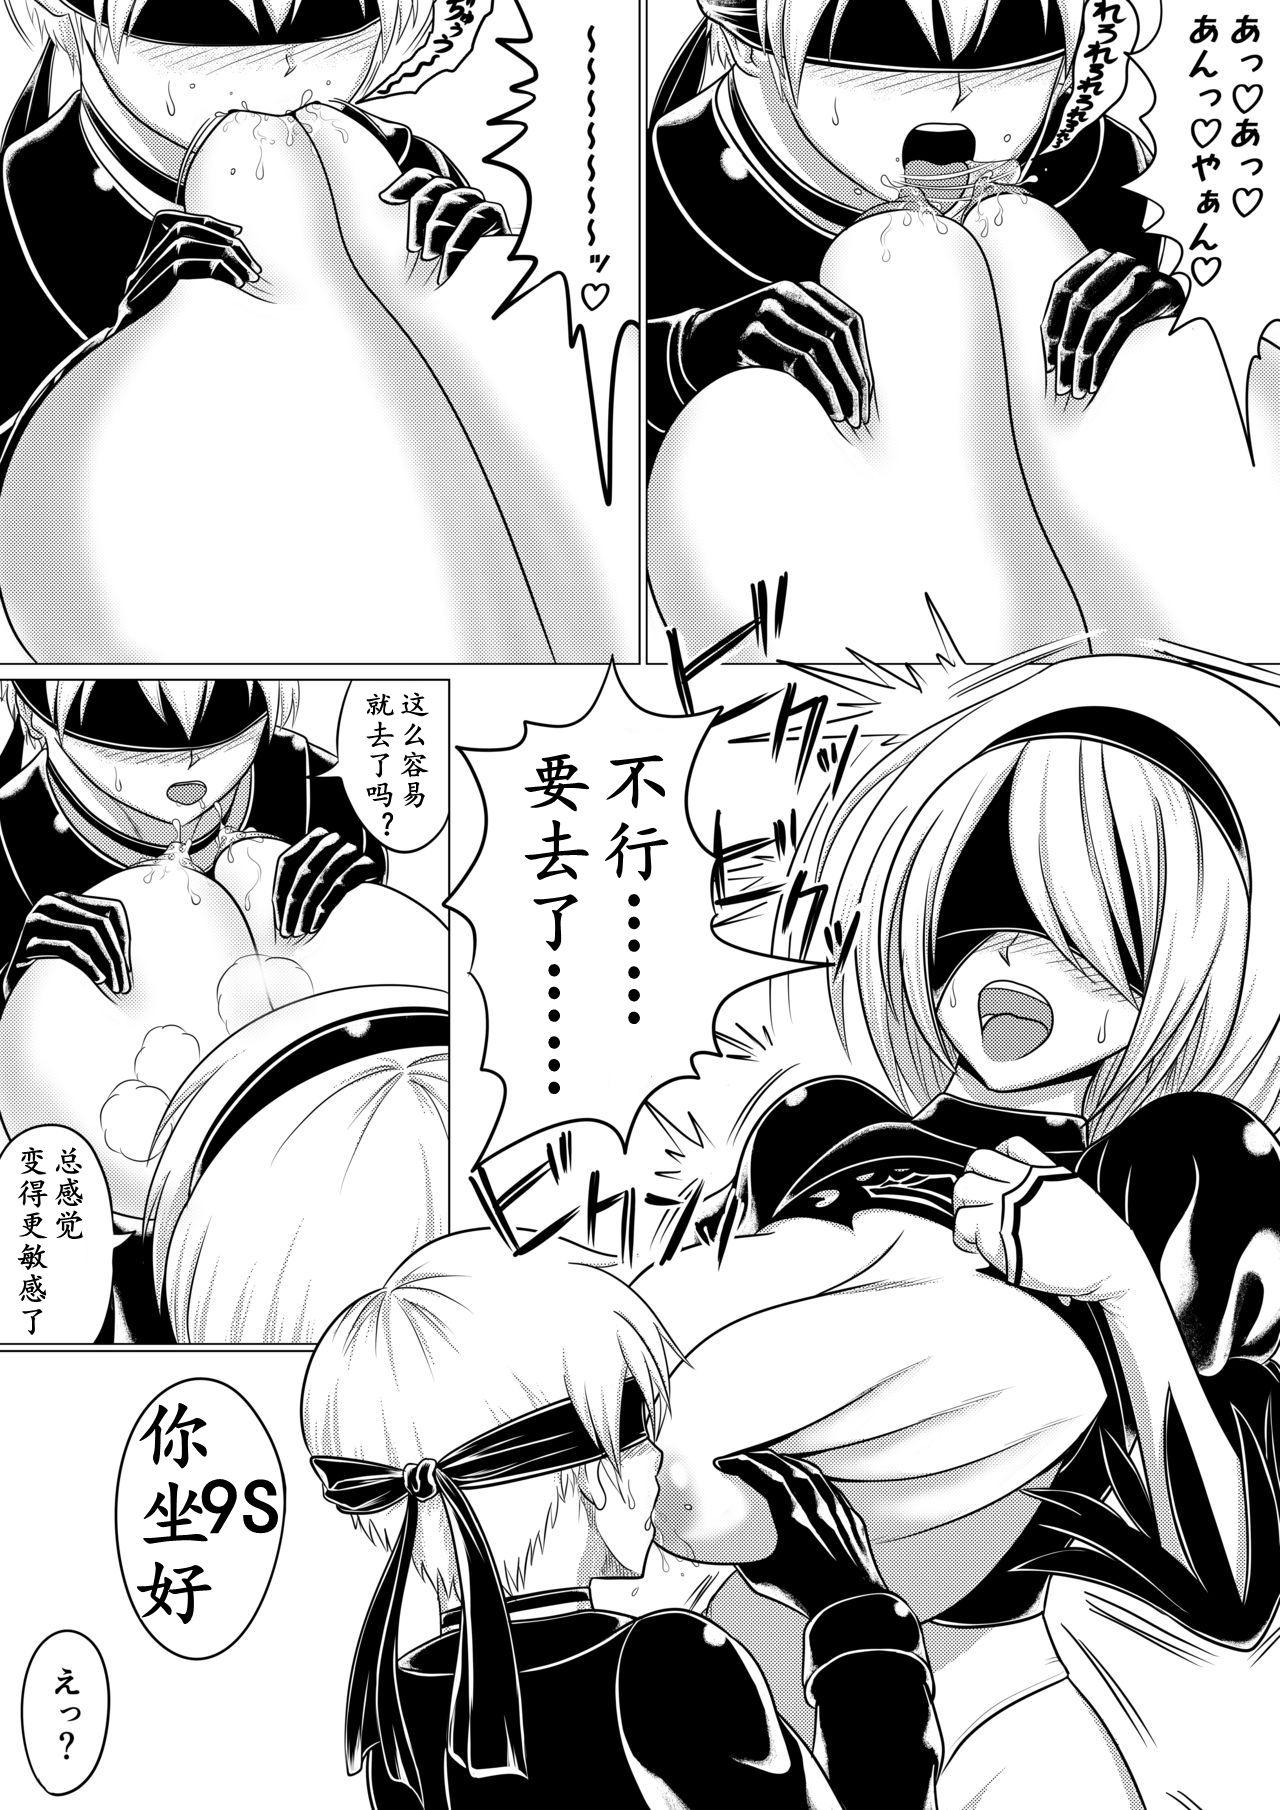 Innocent Automata Manga Oppai Hen - Nier automata 8teen - Page 4